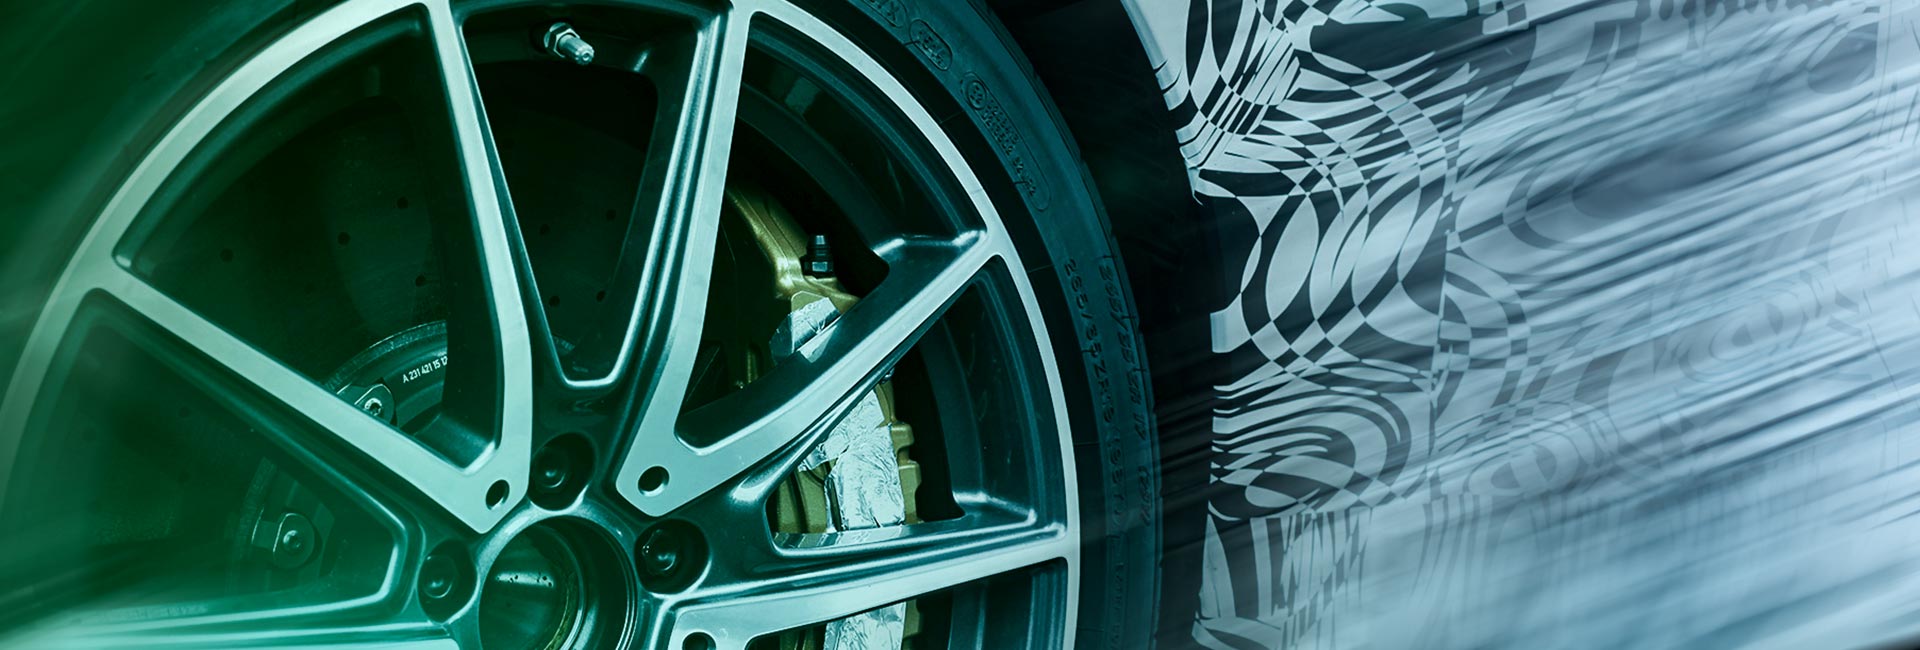 Formel D provozuje testovací centra vozidel, aby výrobcům vozidel dokázala poskytovat ekonomicky schůdná řešení testování vozidel.